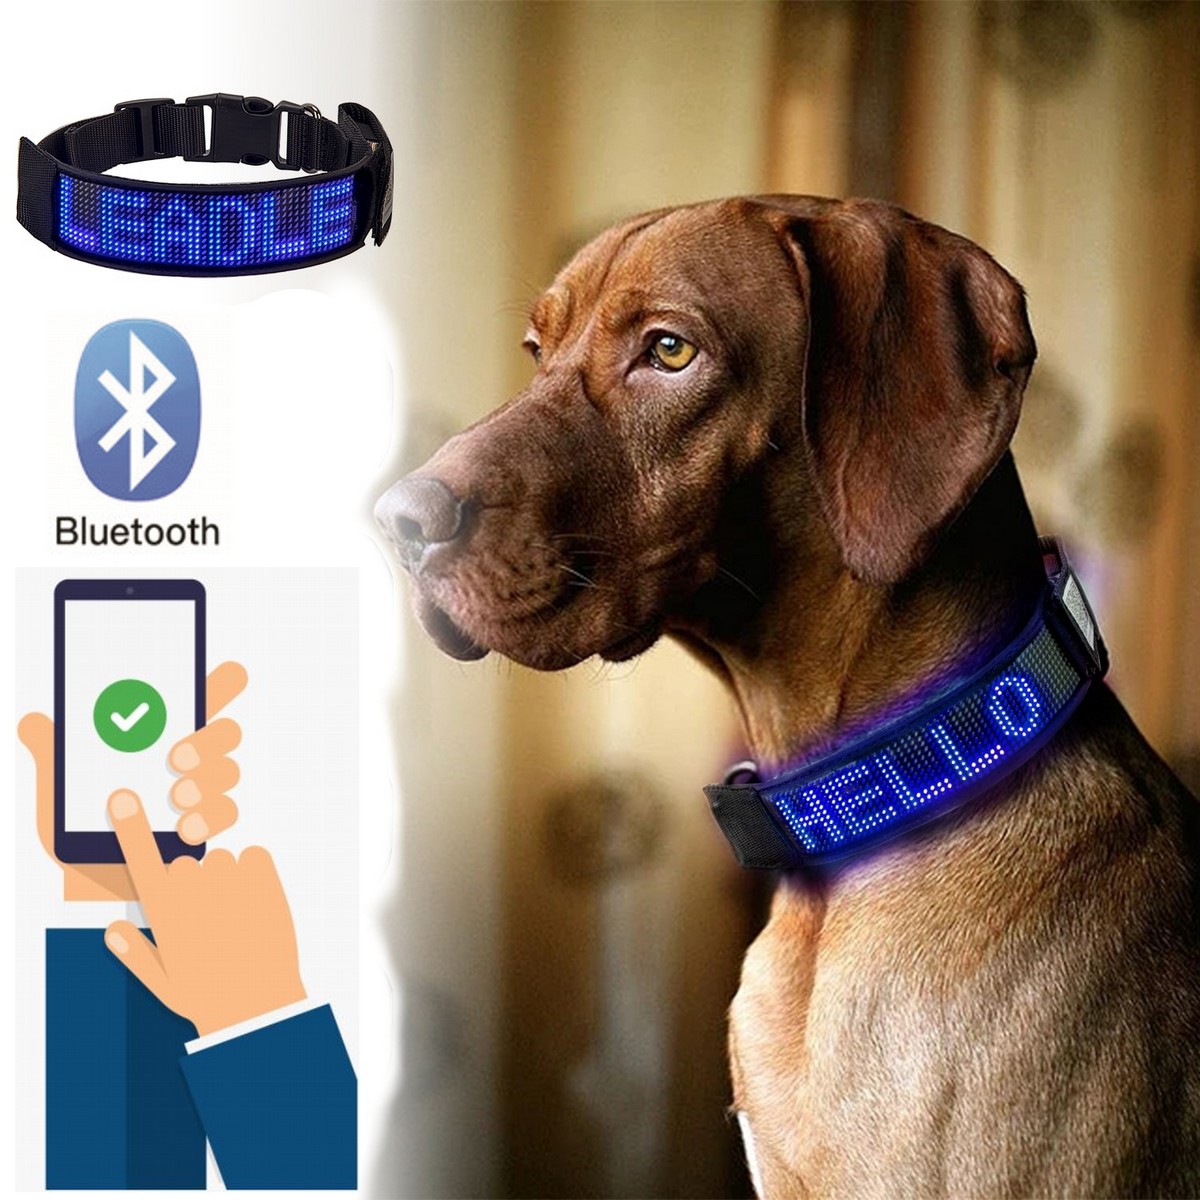 Obojek pro psa LED světelný - jednobarevný s ovládáním přes bluetooth na mobilu